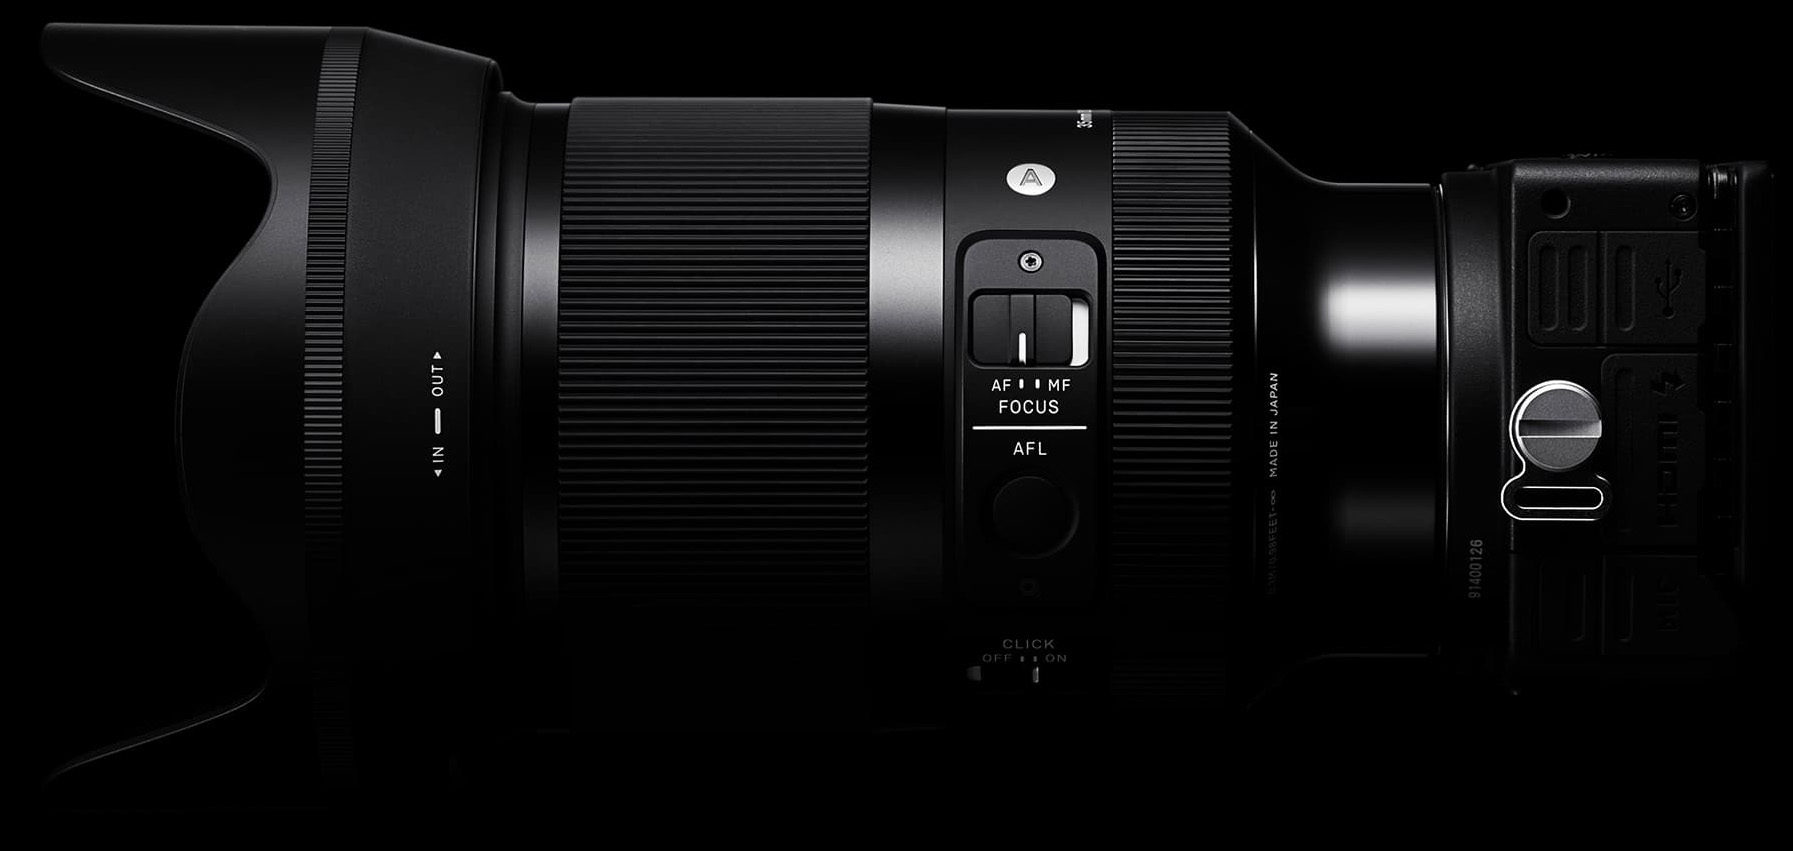 Obiektyw Sigma A 35 mm f/1.2 DG DN / Sony E